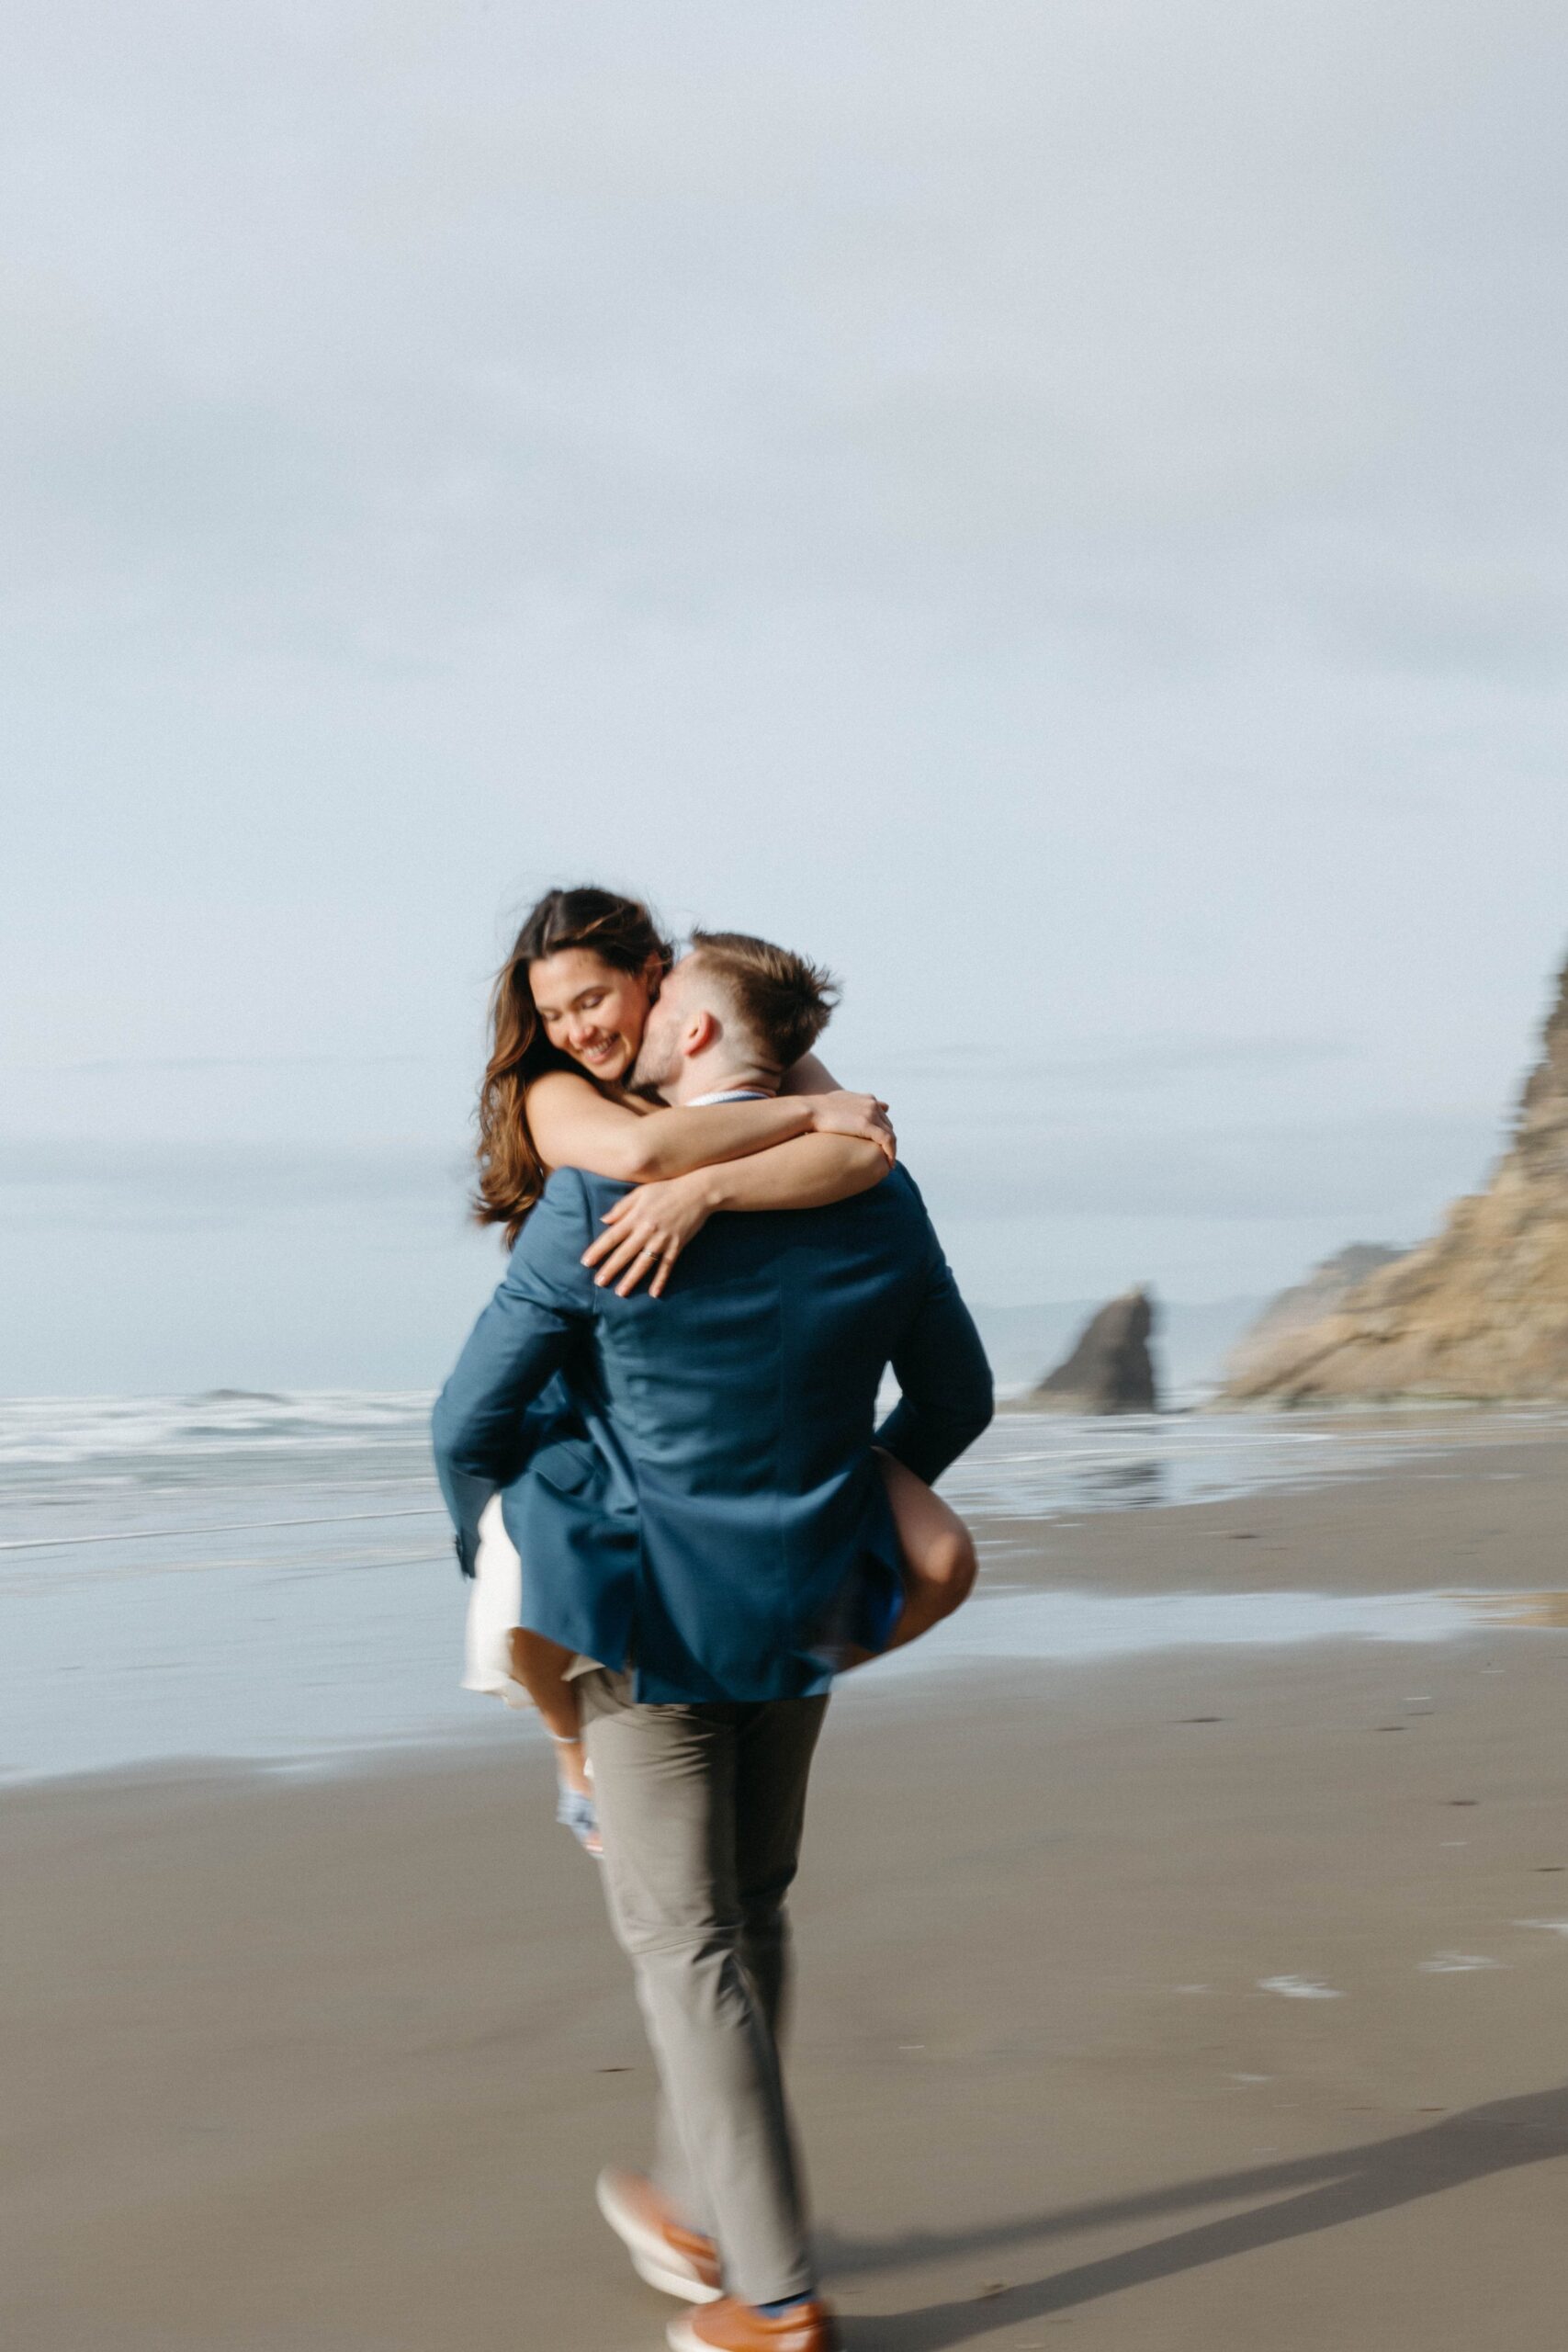  Oregon coast elopement, film photography, arch cape, candids, couple portraits 